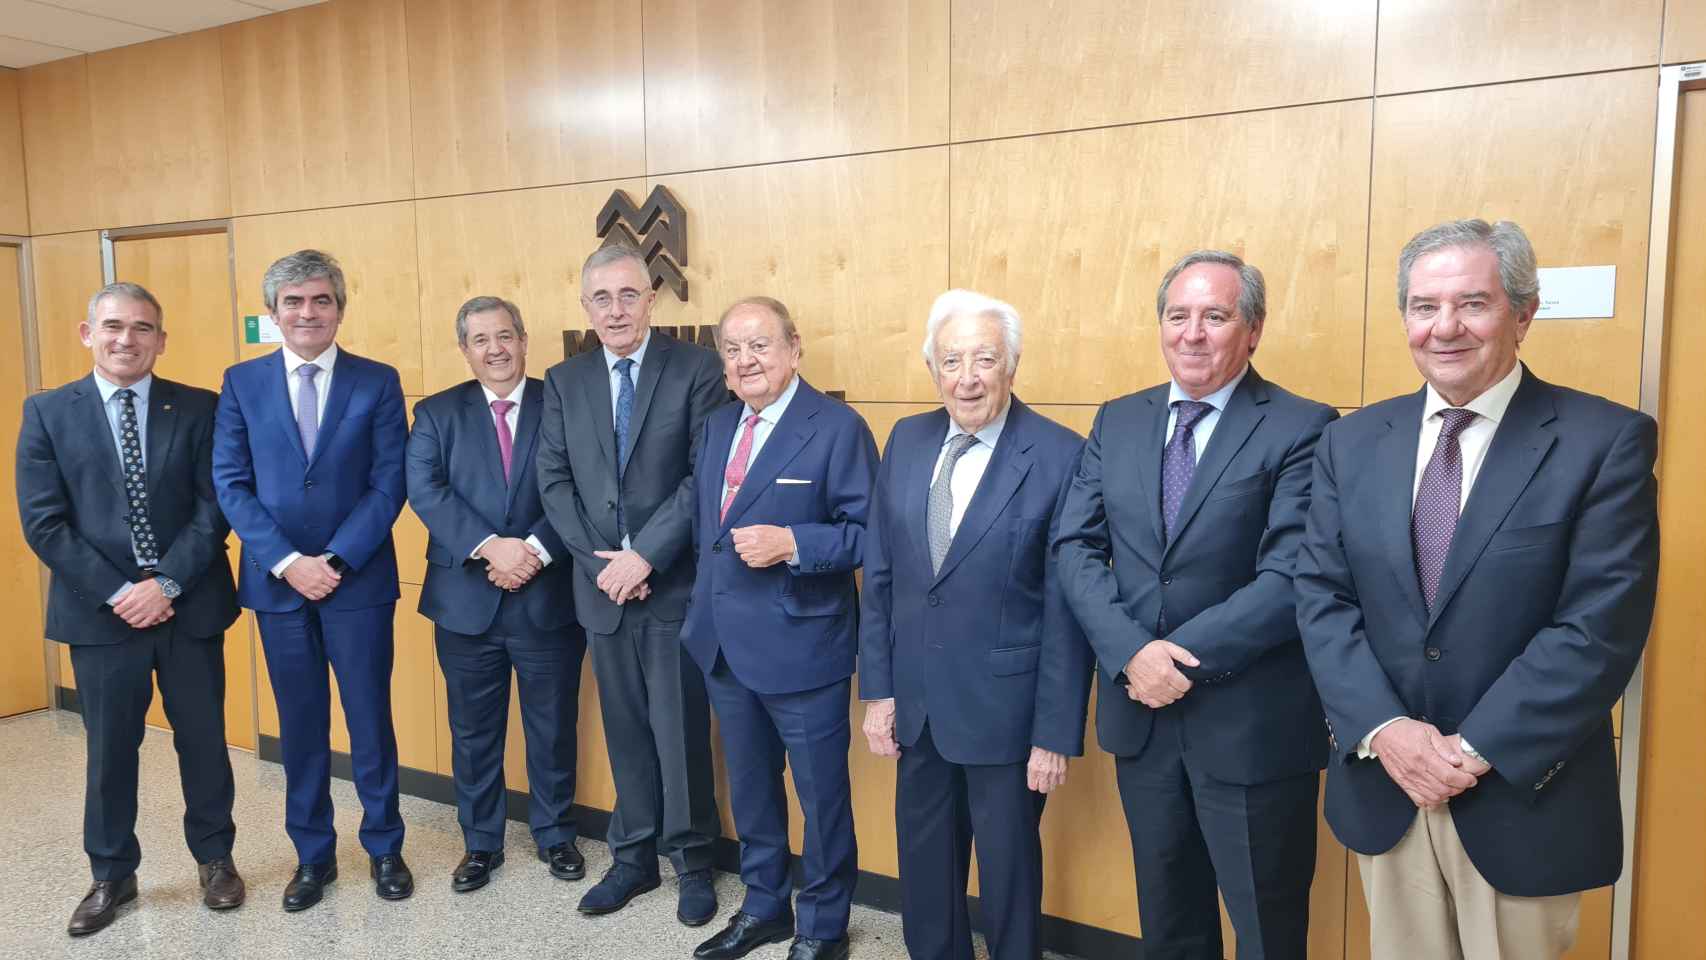 Lluís Gené, Jesús María Esarte, Humberto Carrasco, Enric Torres, Mariano de Diego, Juan Echevarría, Ángel Nicolás y Juan Antonio Güell, de izquierda a derecha:.